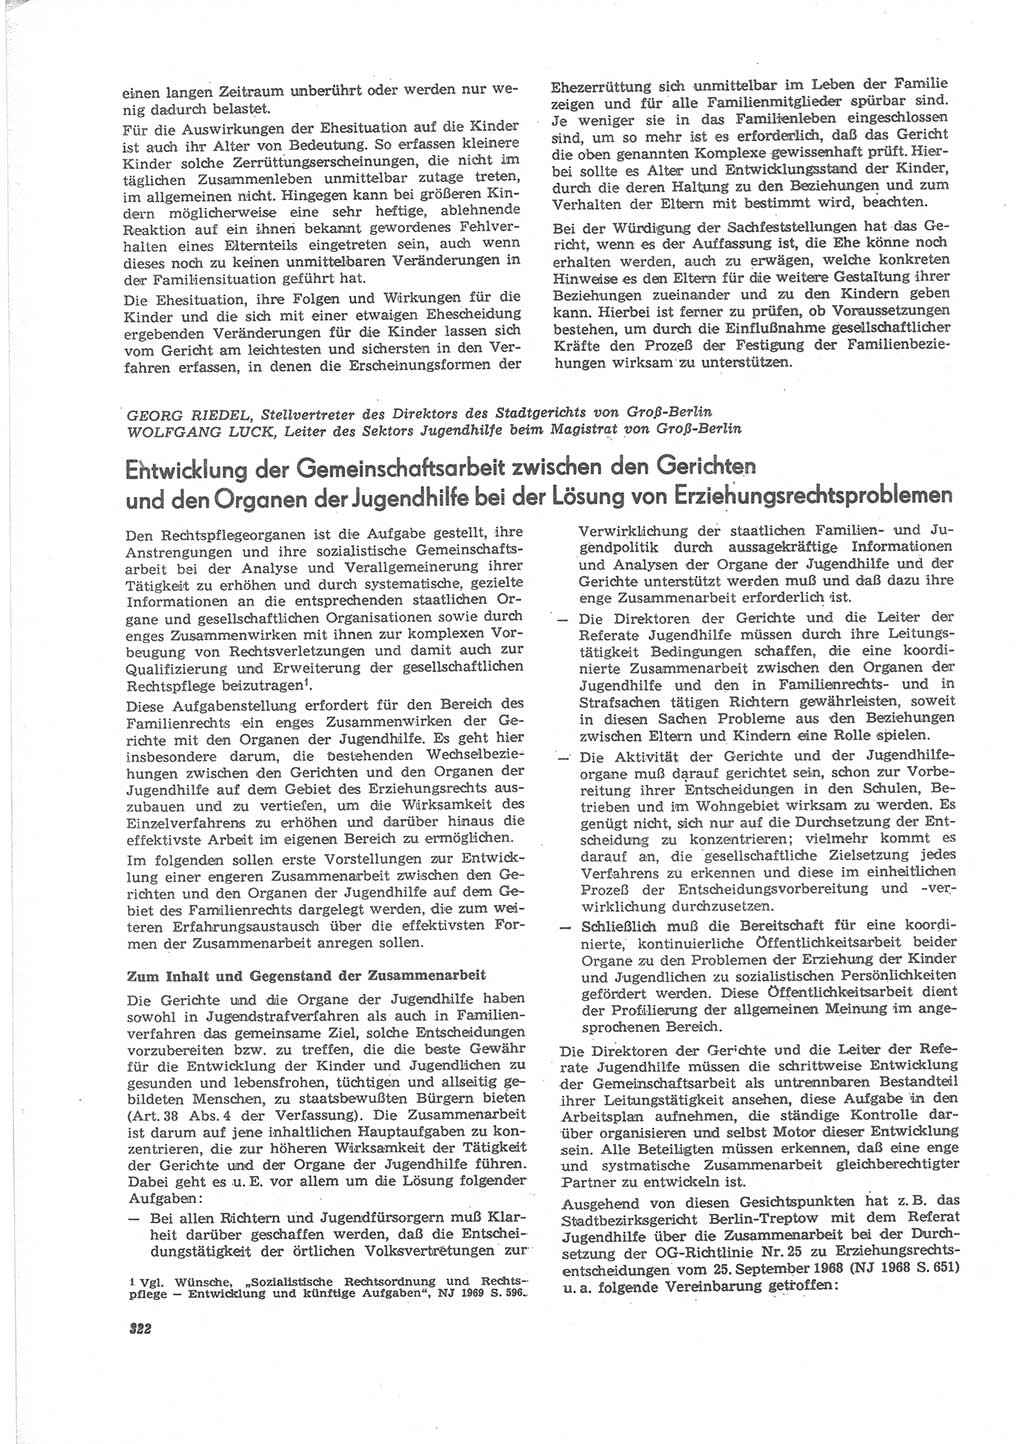 Neue Justiz (NJ), Zeitschrift für Recht und Rechtswissenschaft [Deutsche Demokratische Republik (DDR)], 24. Jahrgang 1970, Seite 322 (NJ DDR 1970, S. 322)